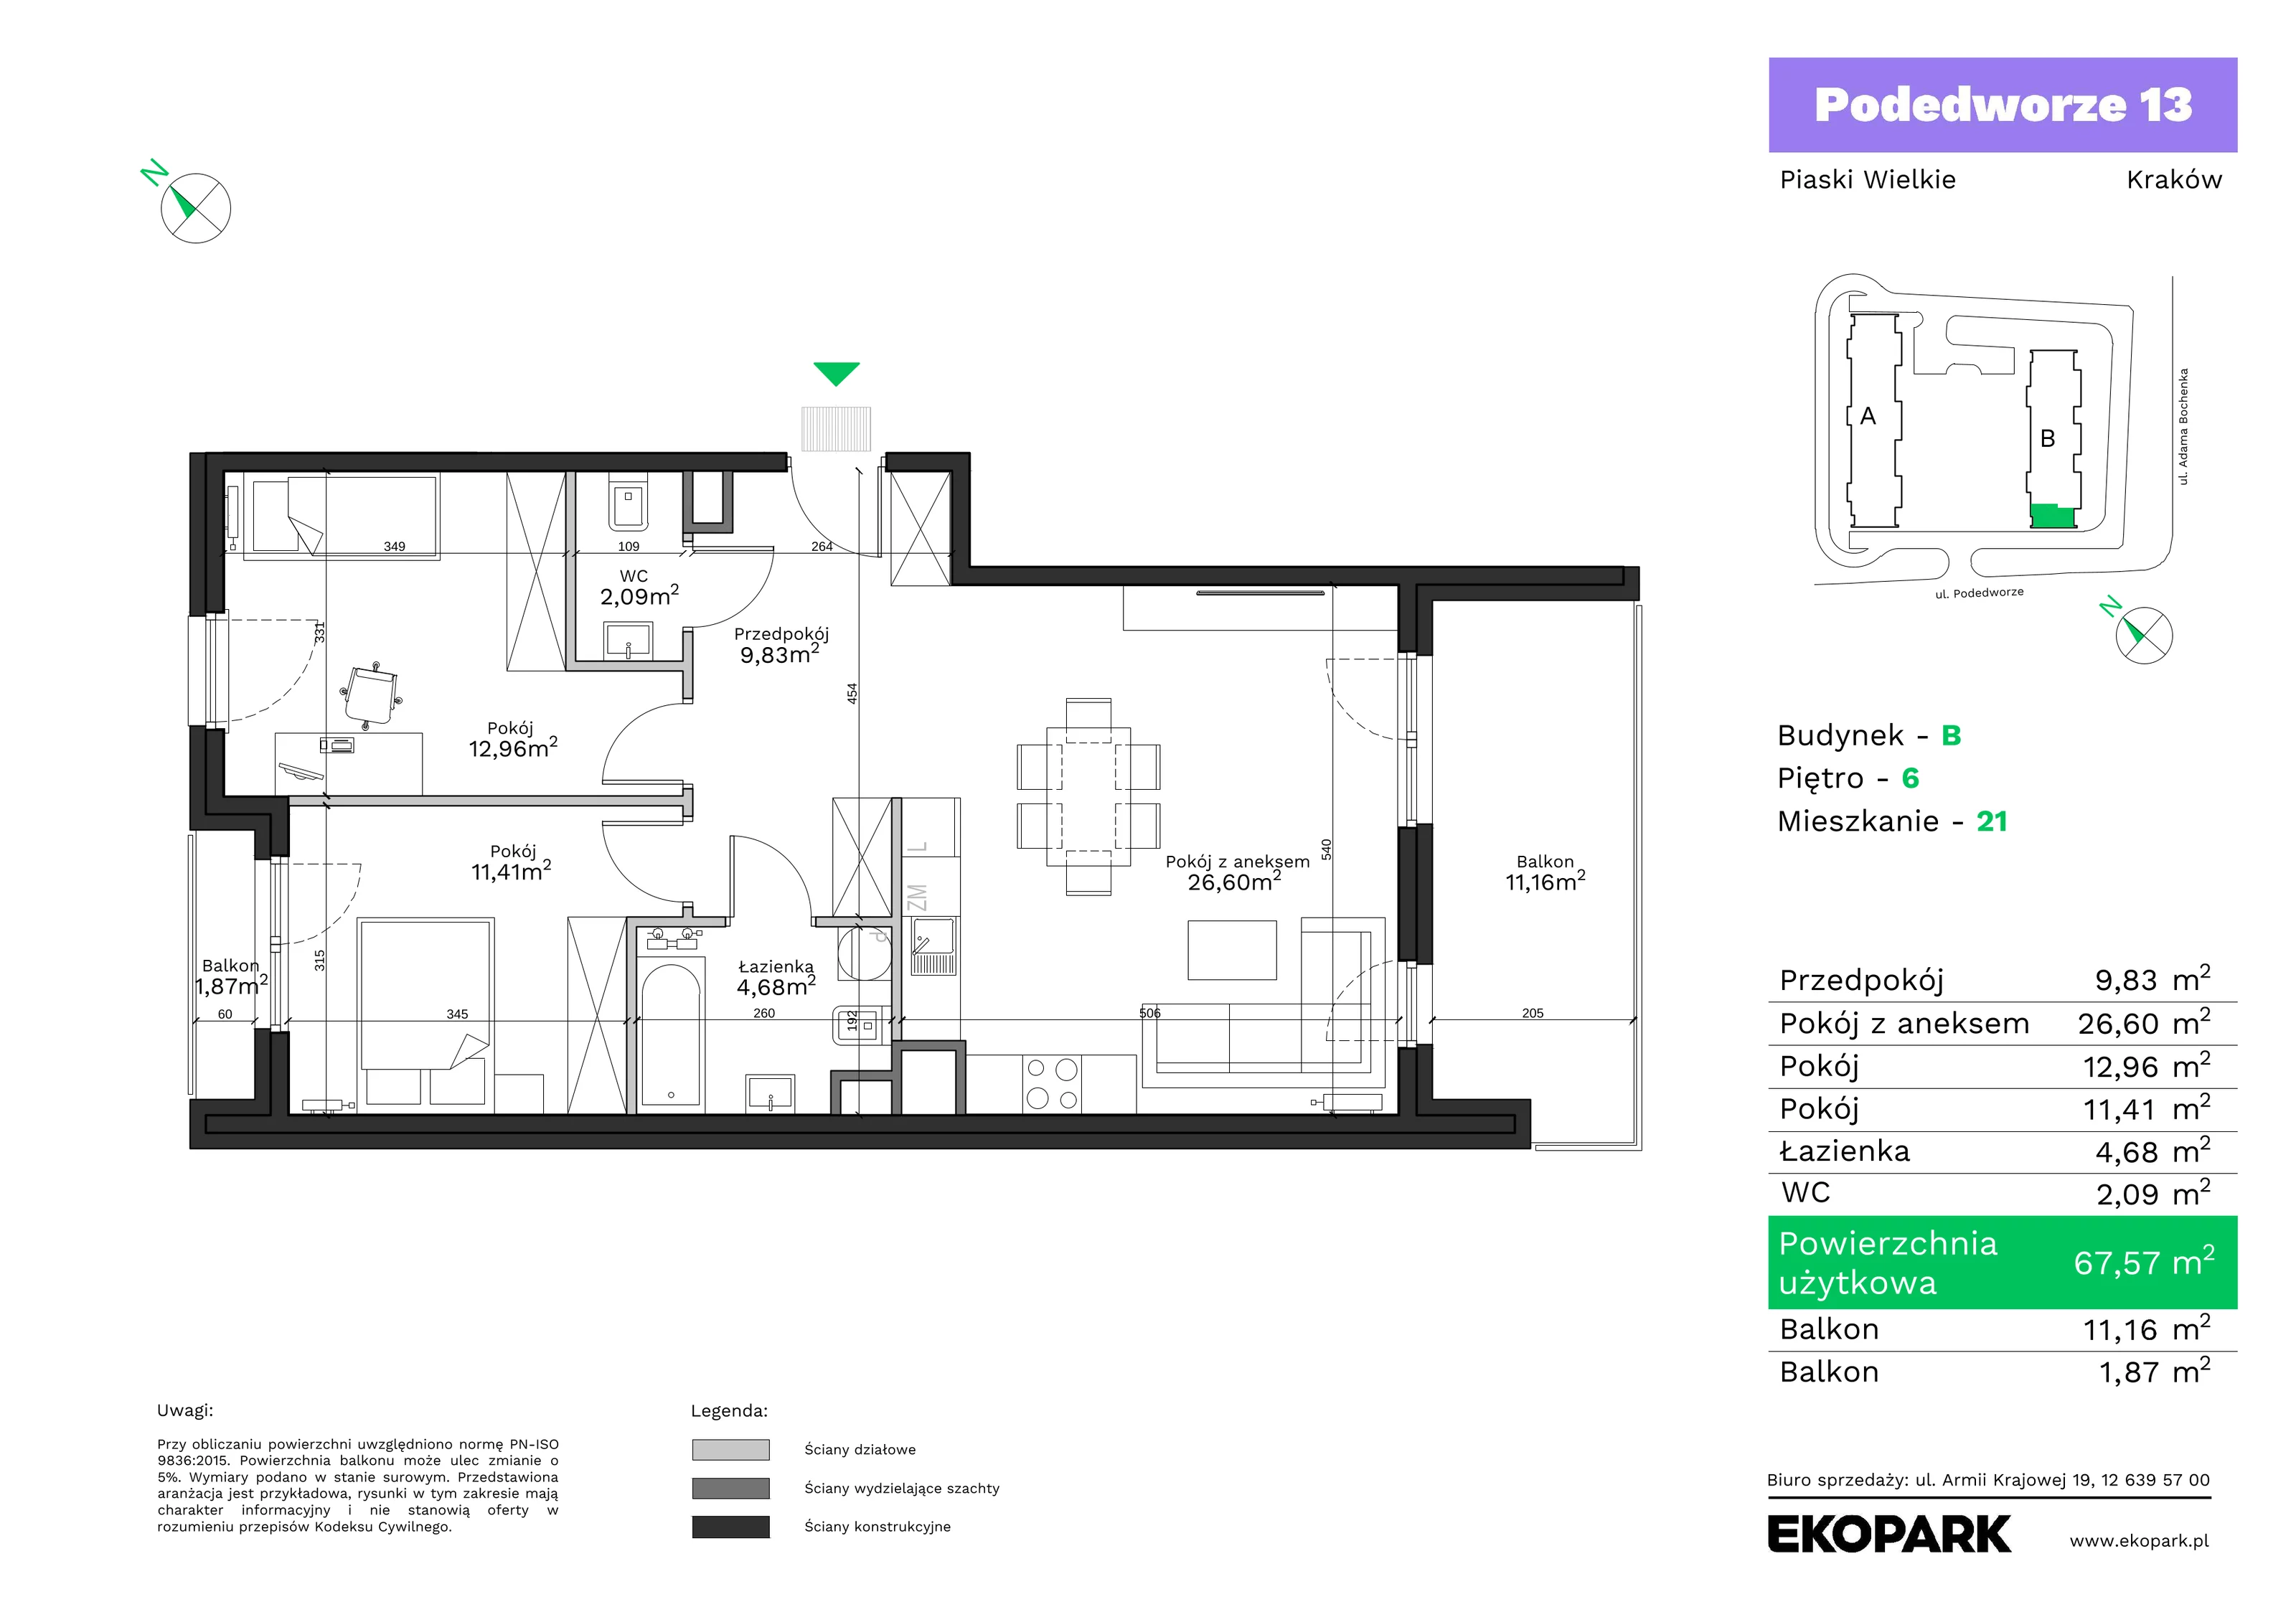 Mieszkanie 67,57 m², piętro 6, oferta nr B21, Podedworze 13, Kraków, Podgórze Duchackie, Piaski Wielkie, ul. Podedworze 13